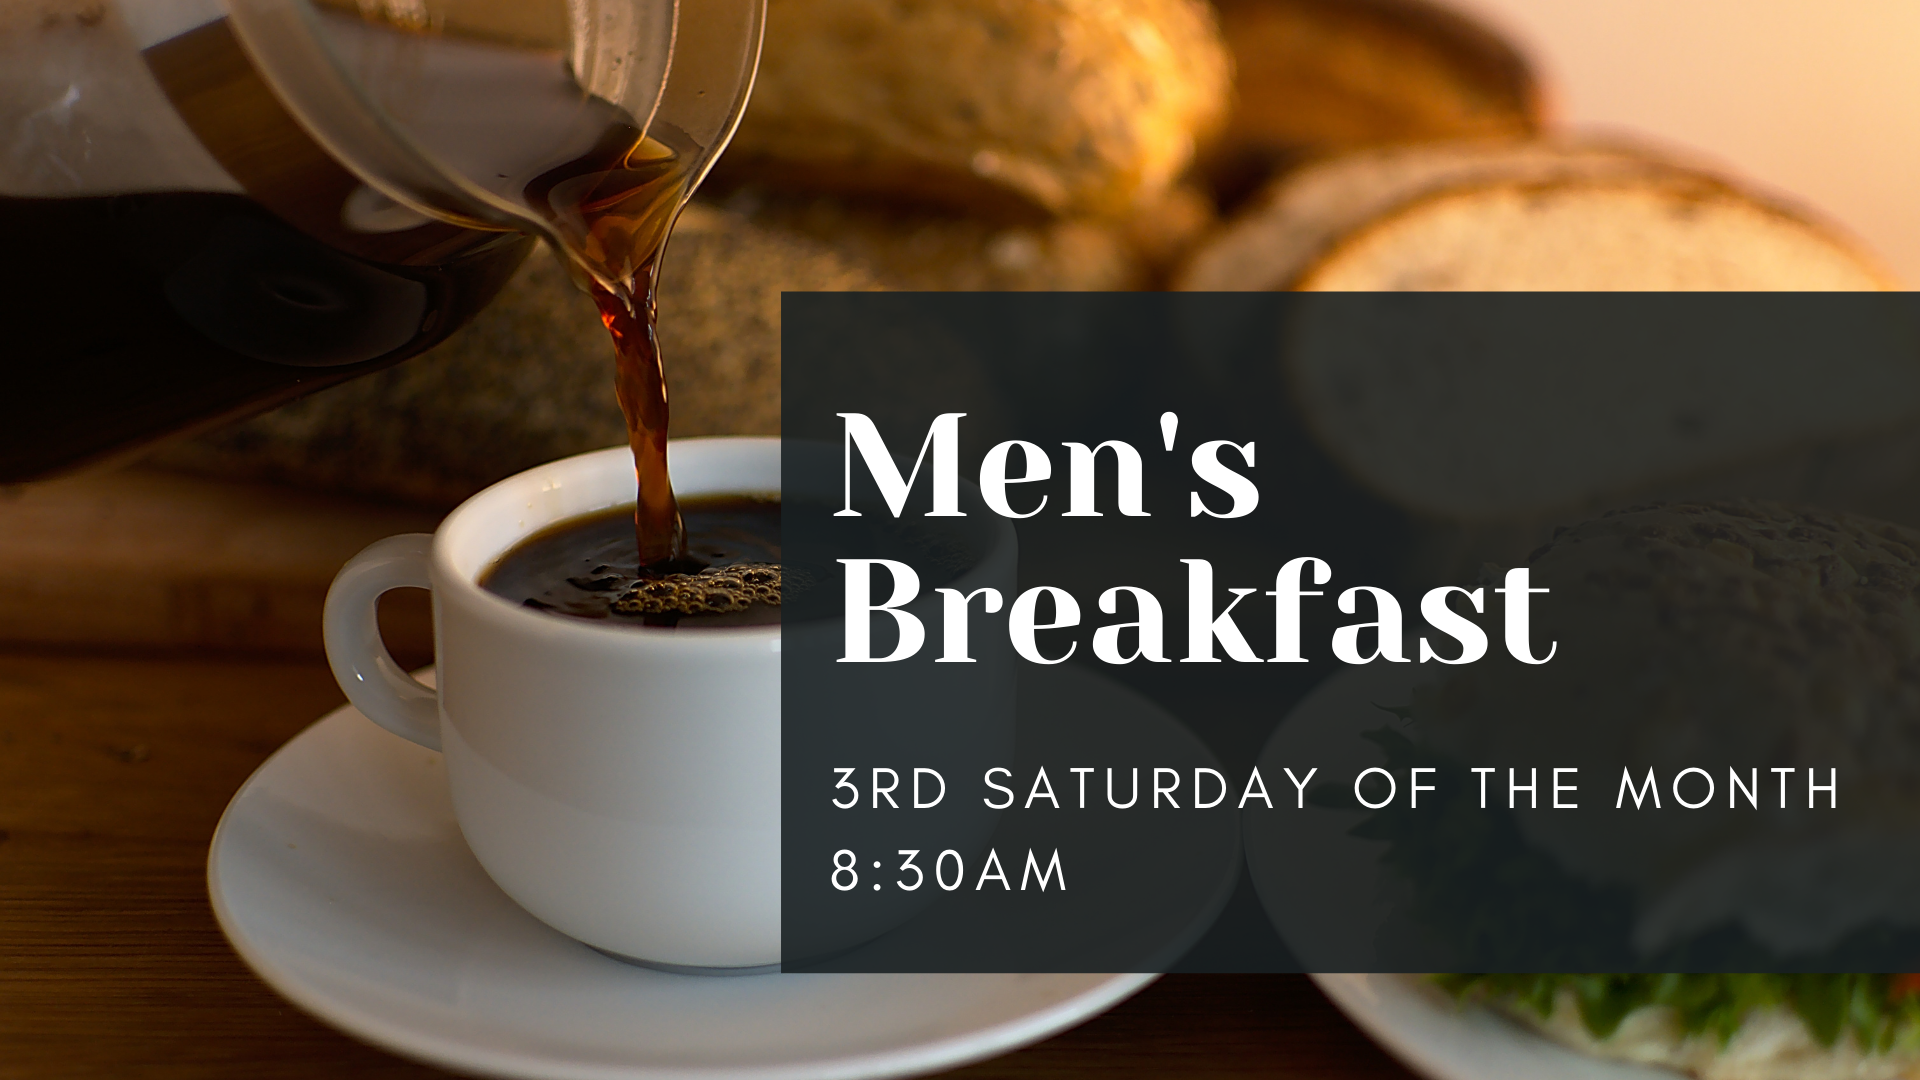 Men’s breakfast